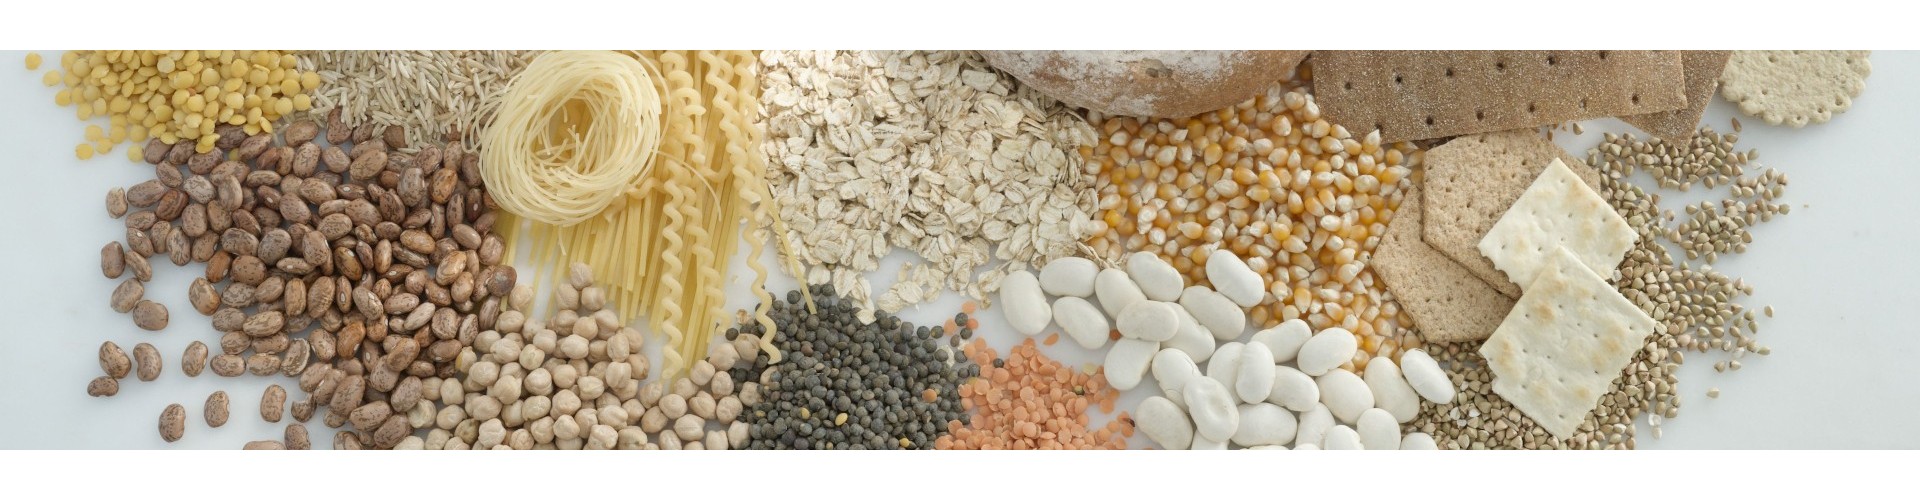 Féculents : riz, céréales et pâtes profitent du flexitarisme